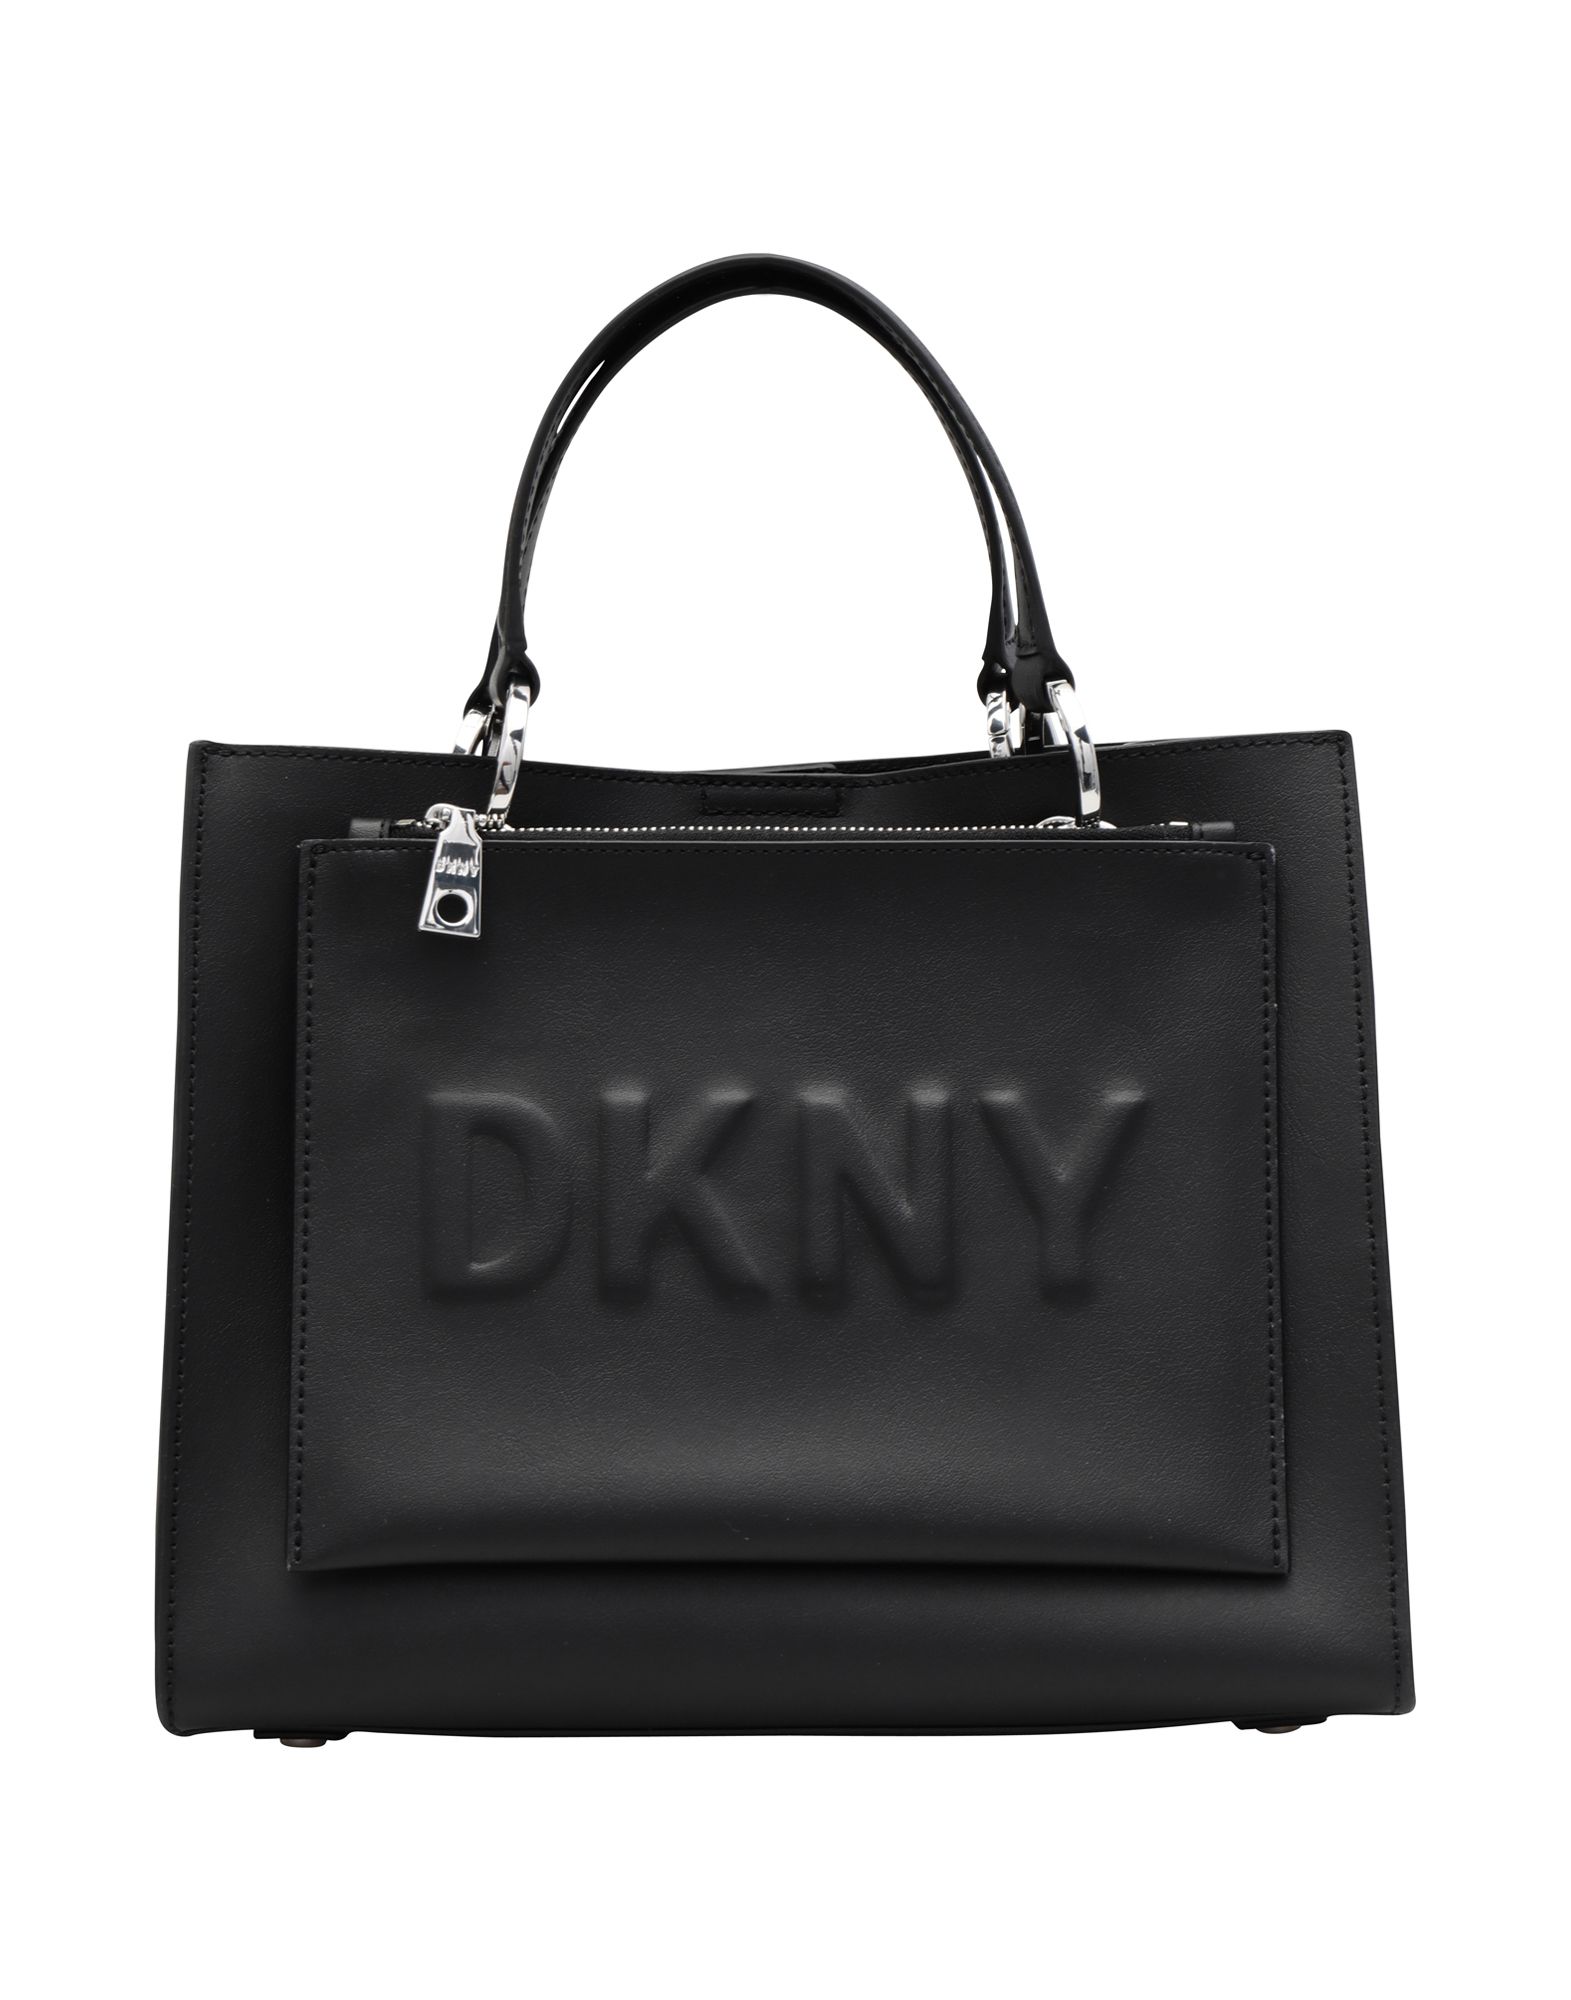 《送料無料》DKNY レディース ハンドバッグ ブラック 牛革 100% / ポリウレタン MOTT